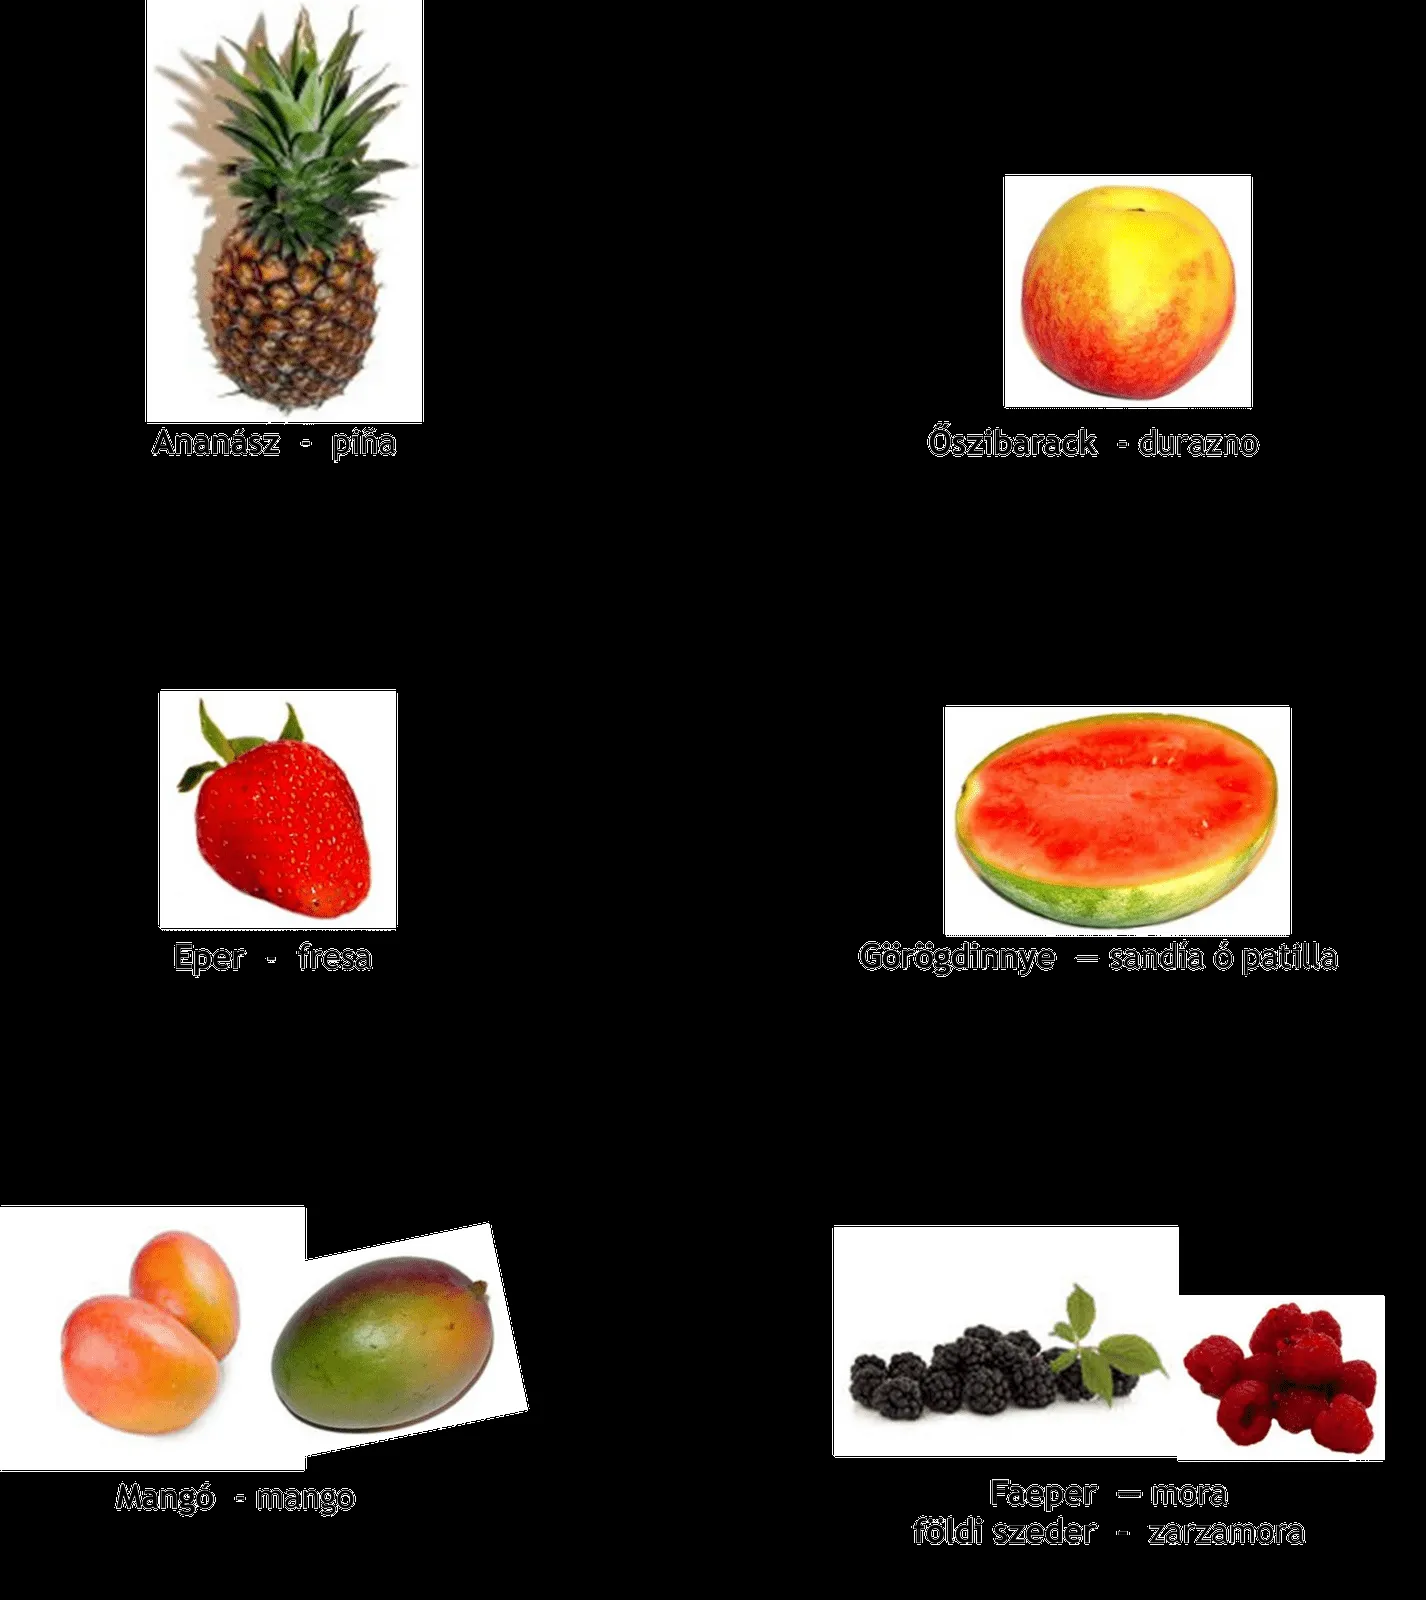 Imágenes de frutas con sus nombres en inglés - Imagui